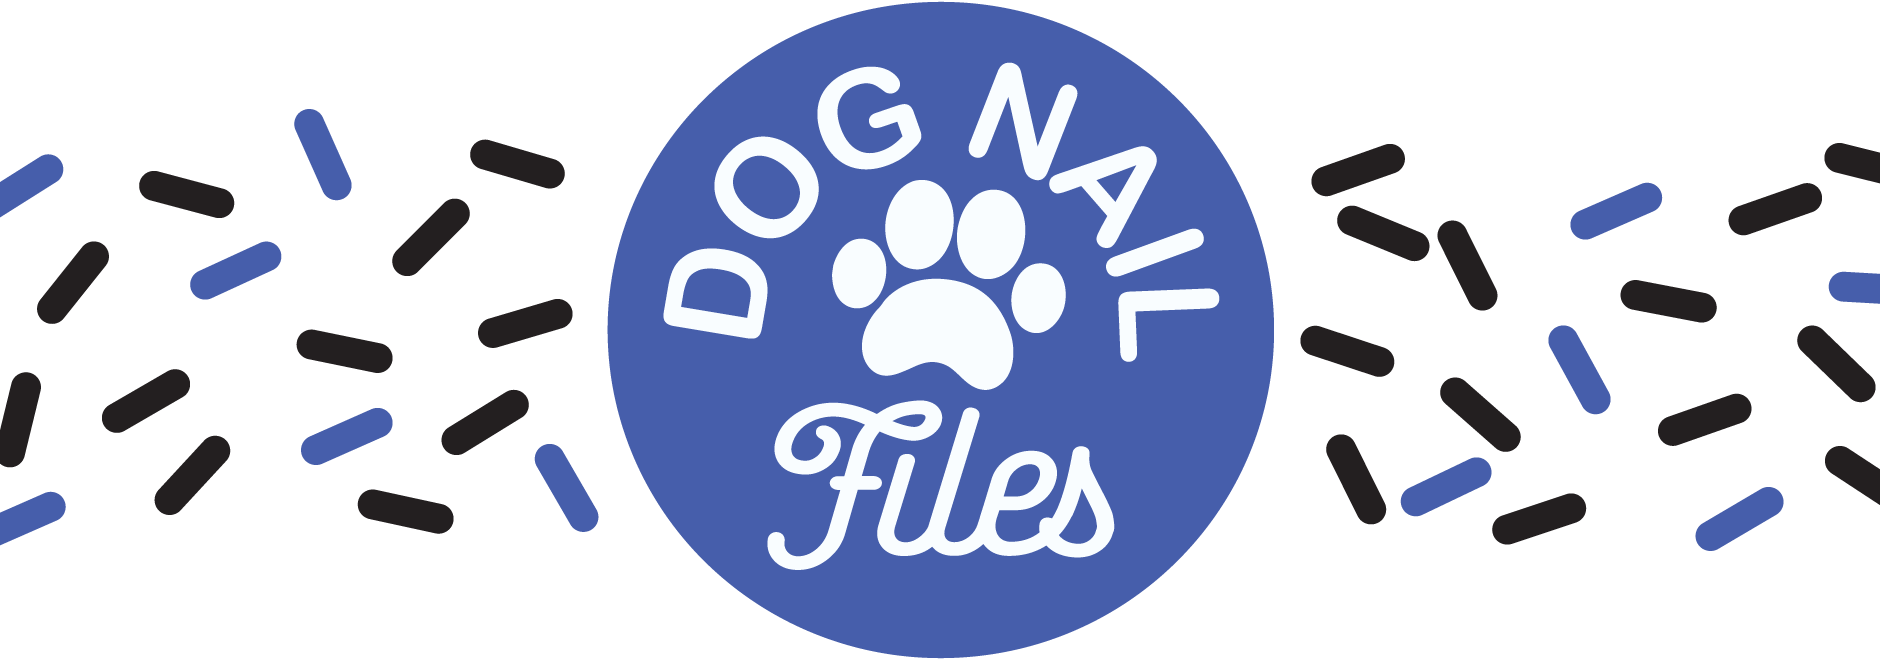 Dog nail files logo